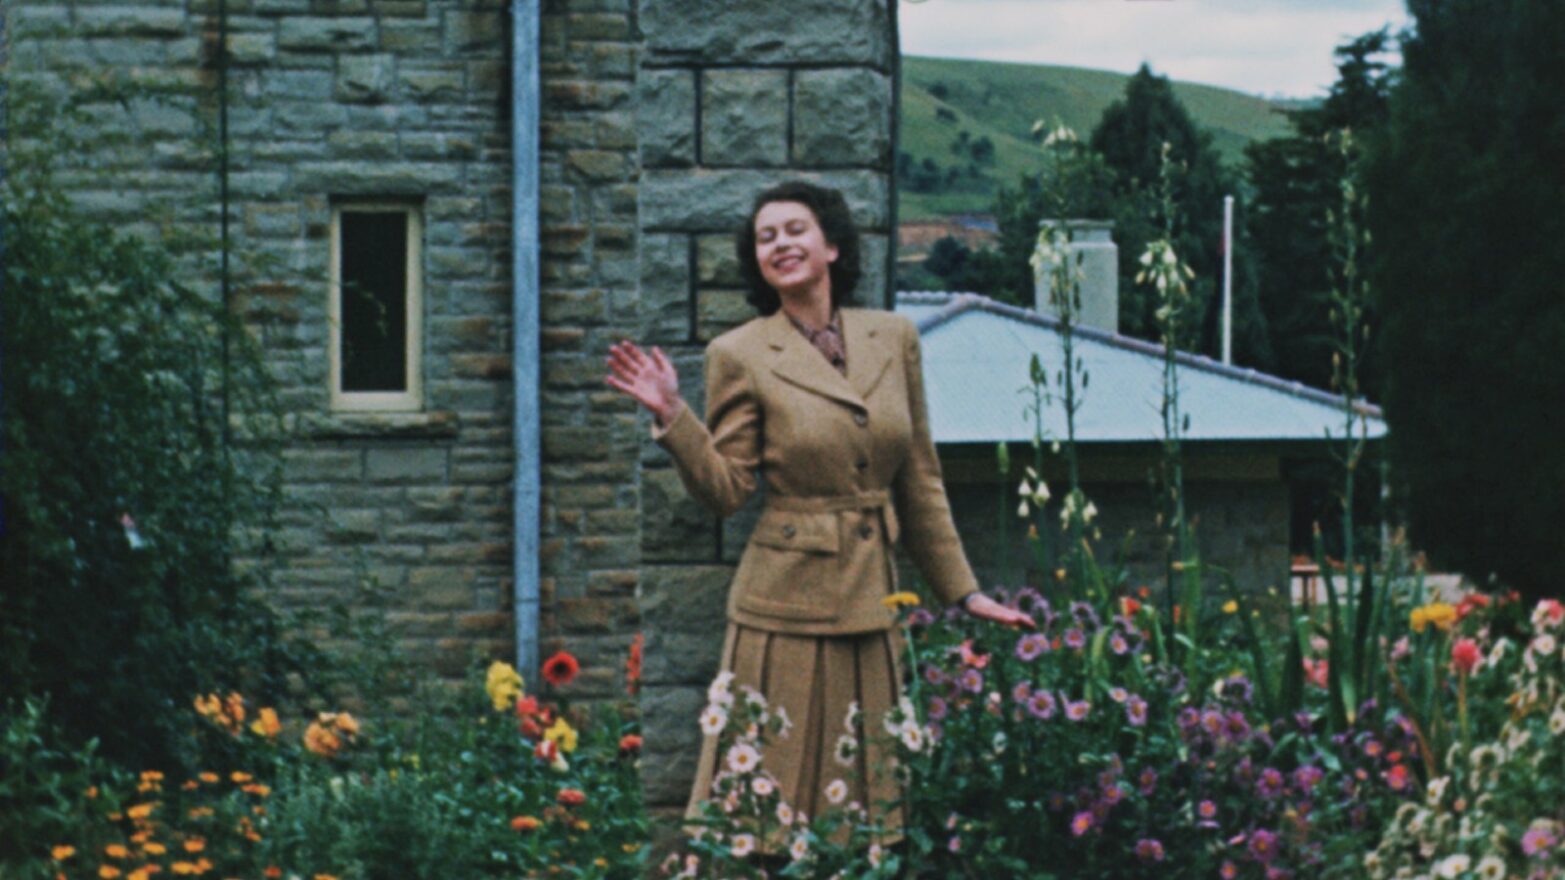 A screengrab of Queen Elizabeth II in her garden